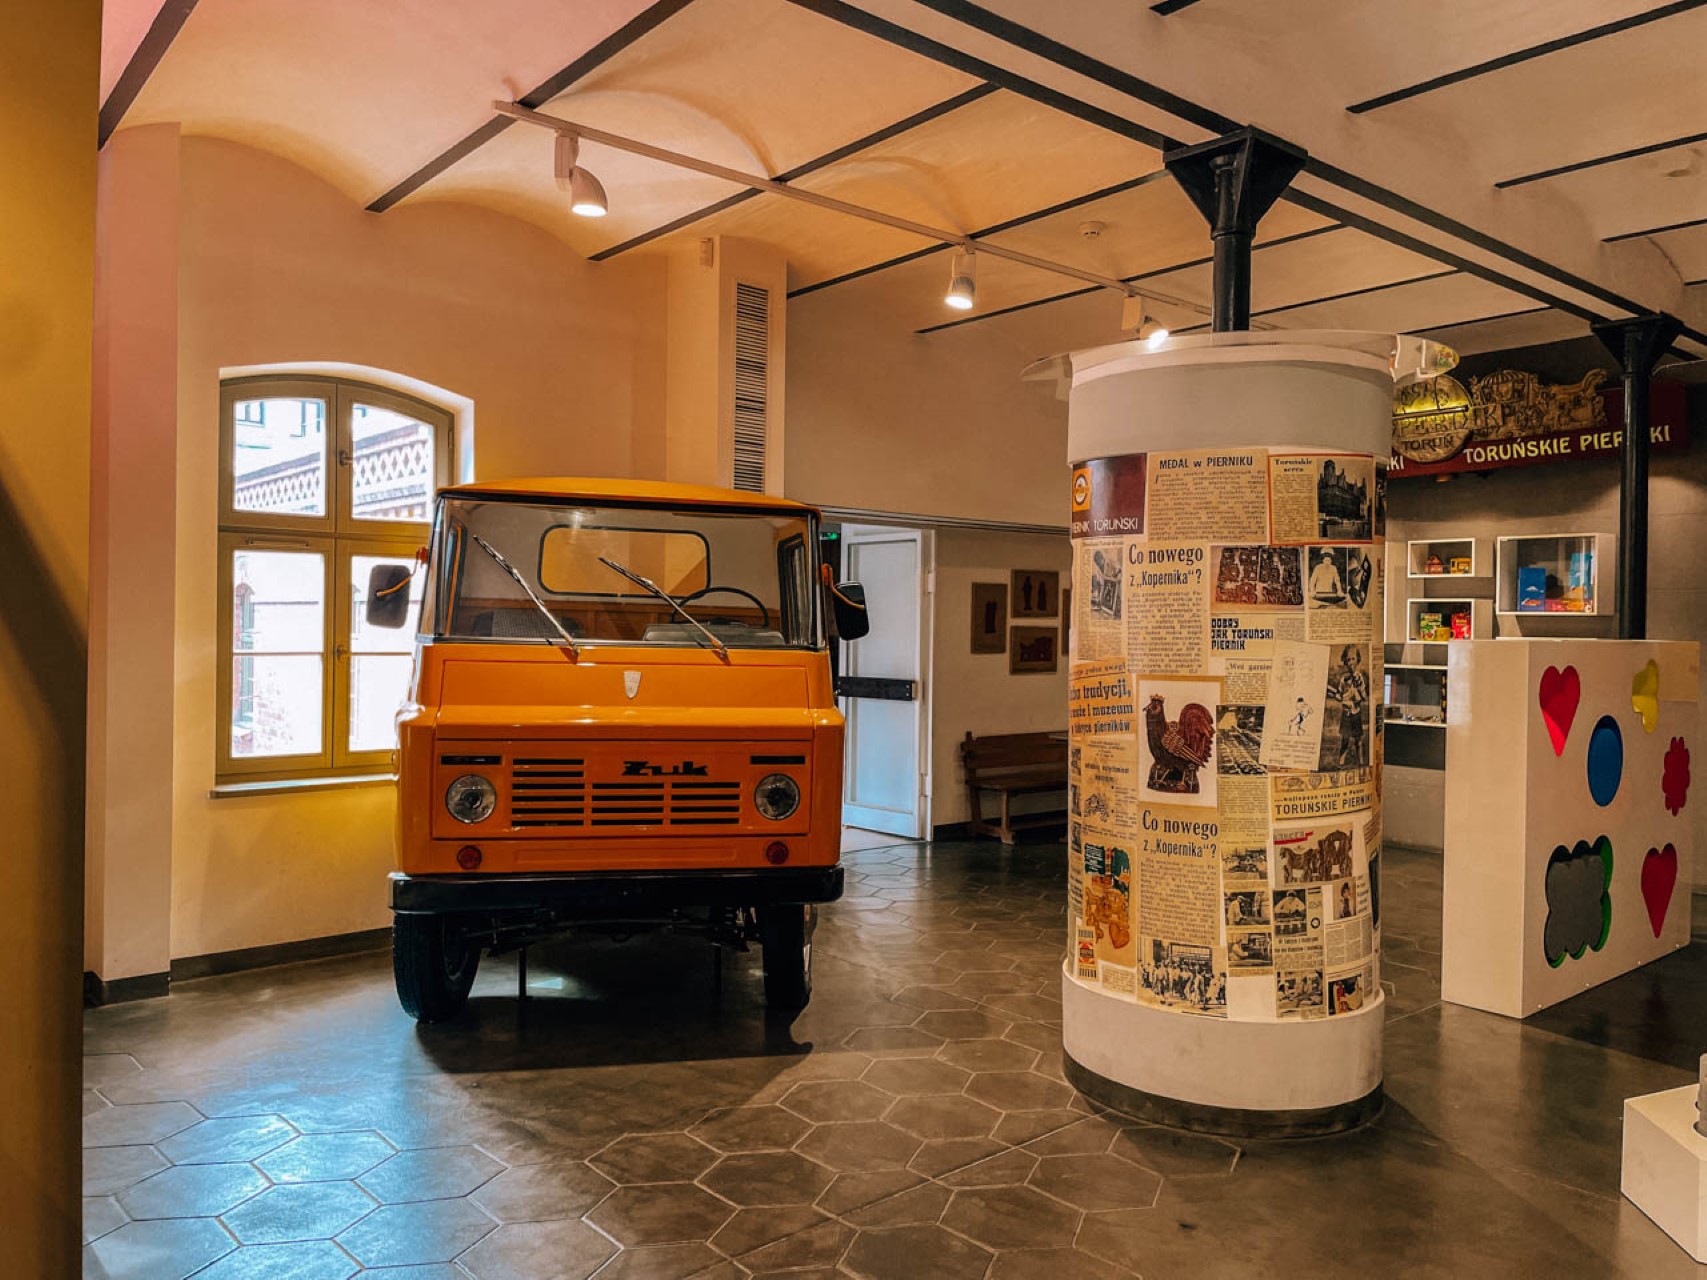 Muzeum Toruńskiego Piernika | Weekend w Toruniu